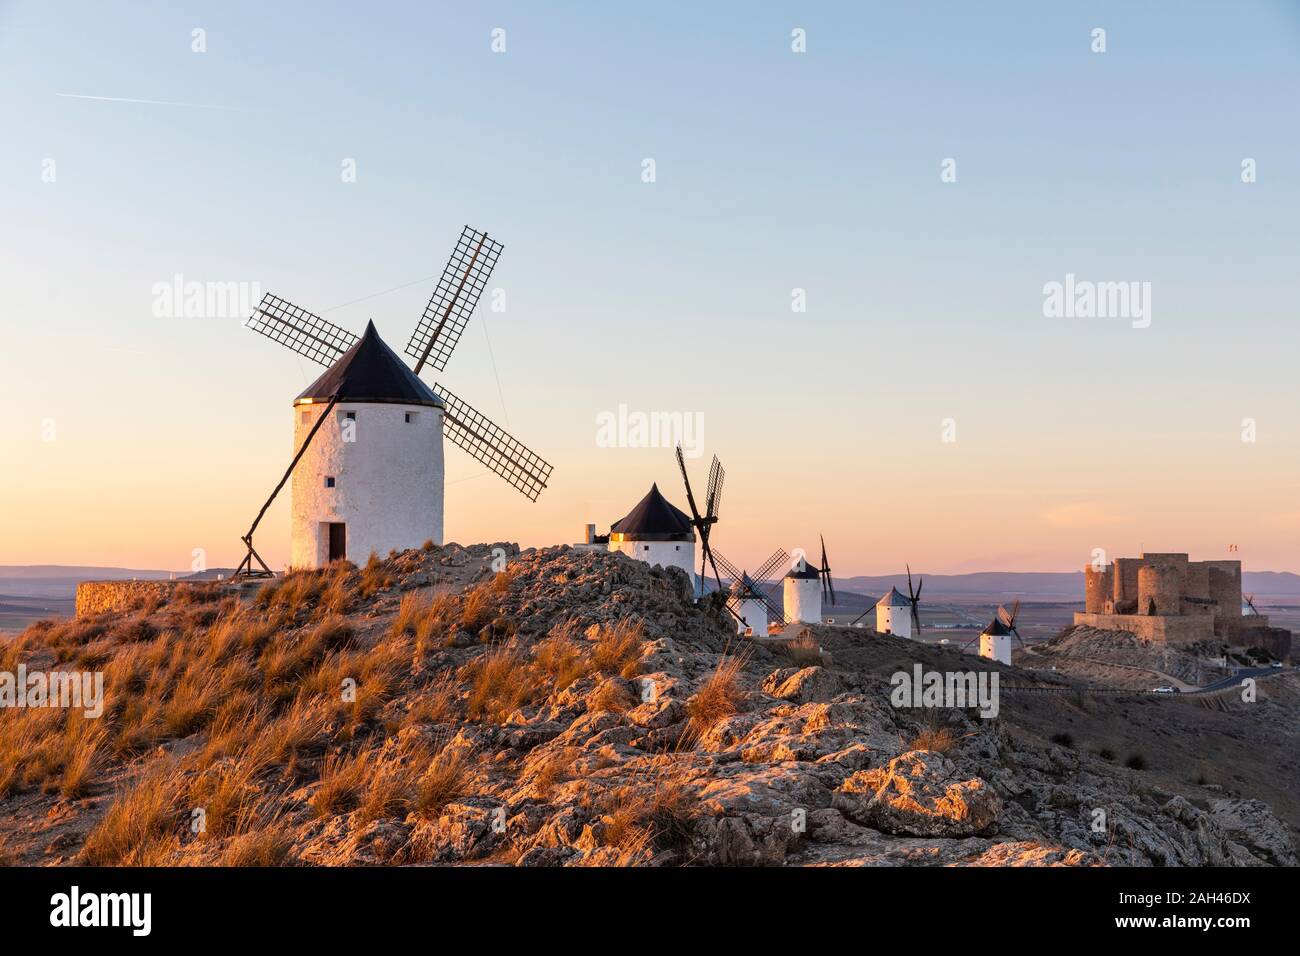 Espagne, province de Tolède, Consuegra, rangée de vieux moulins à vent debout sur la colline parlementaire Banque D'Images